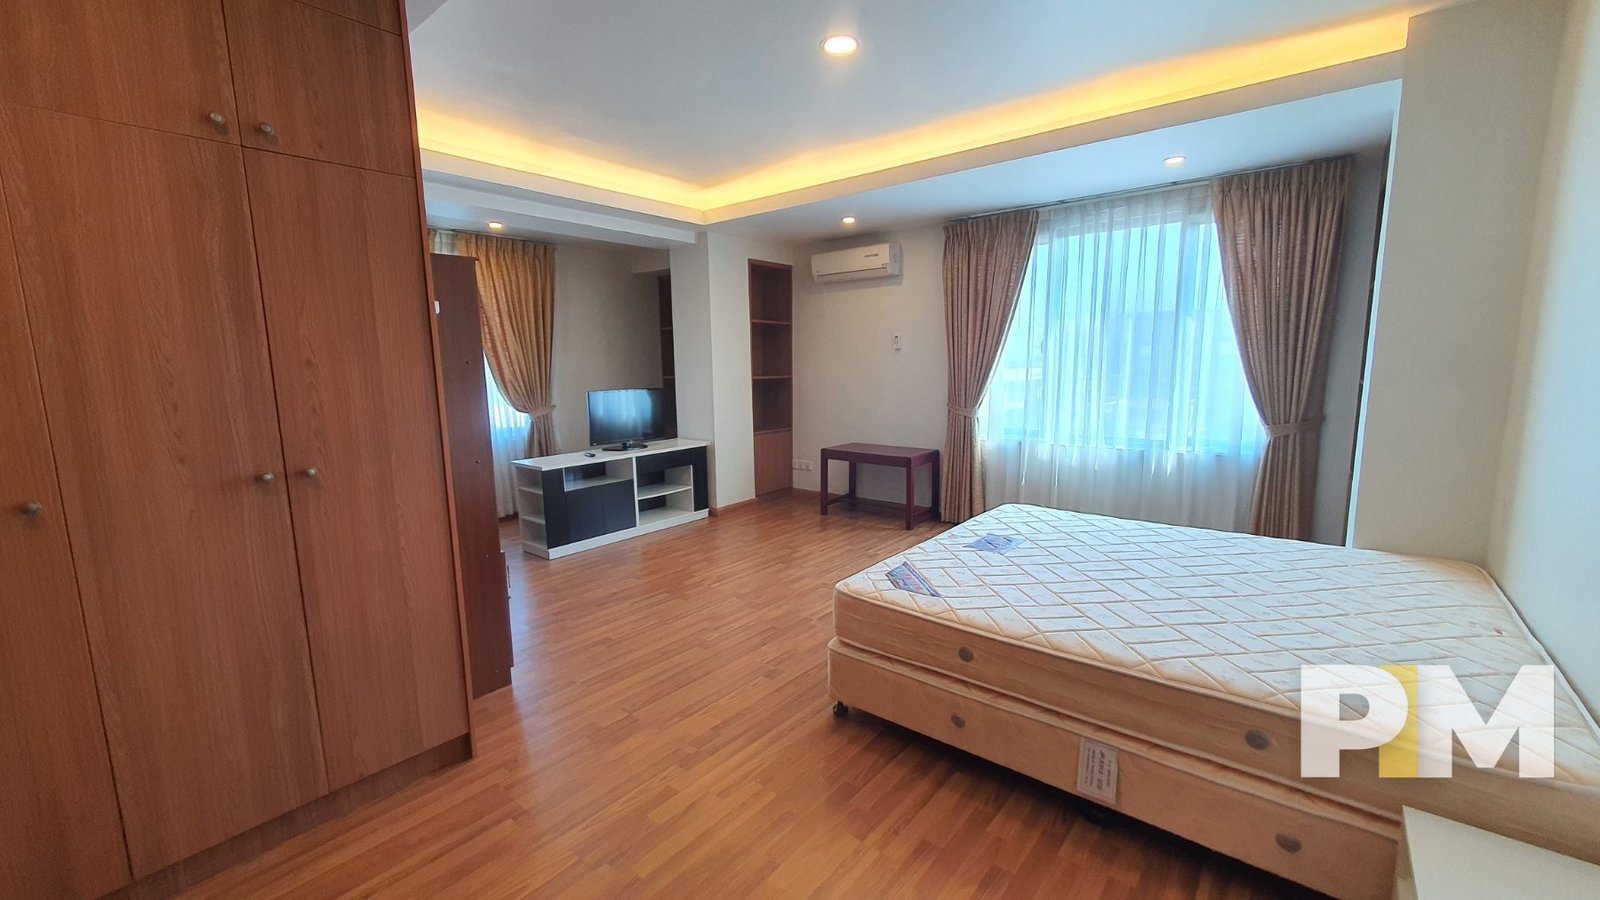 bedroom-properties in yangon